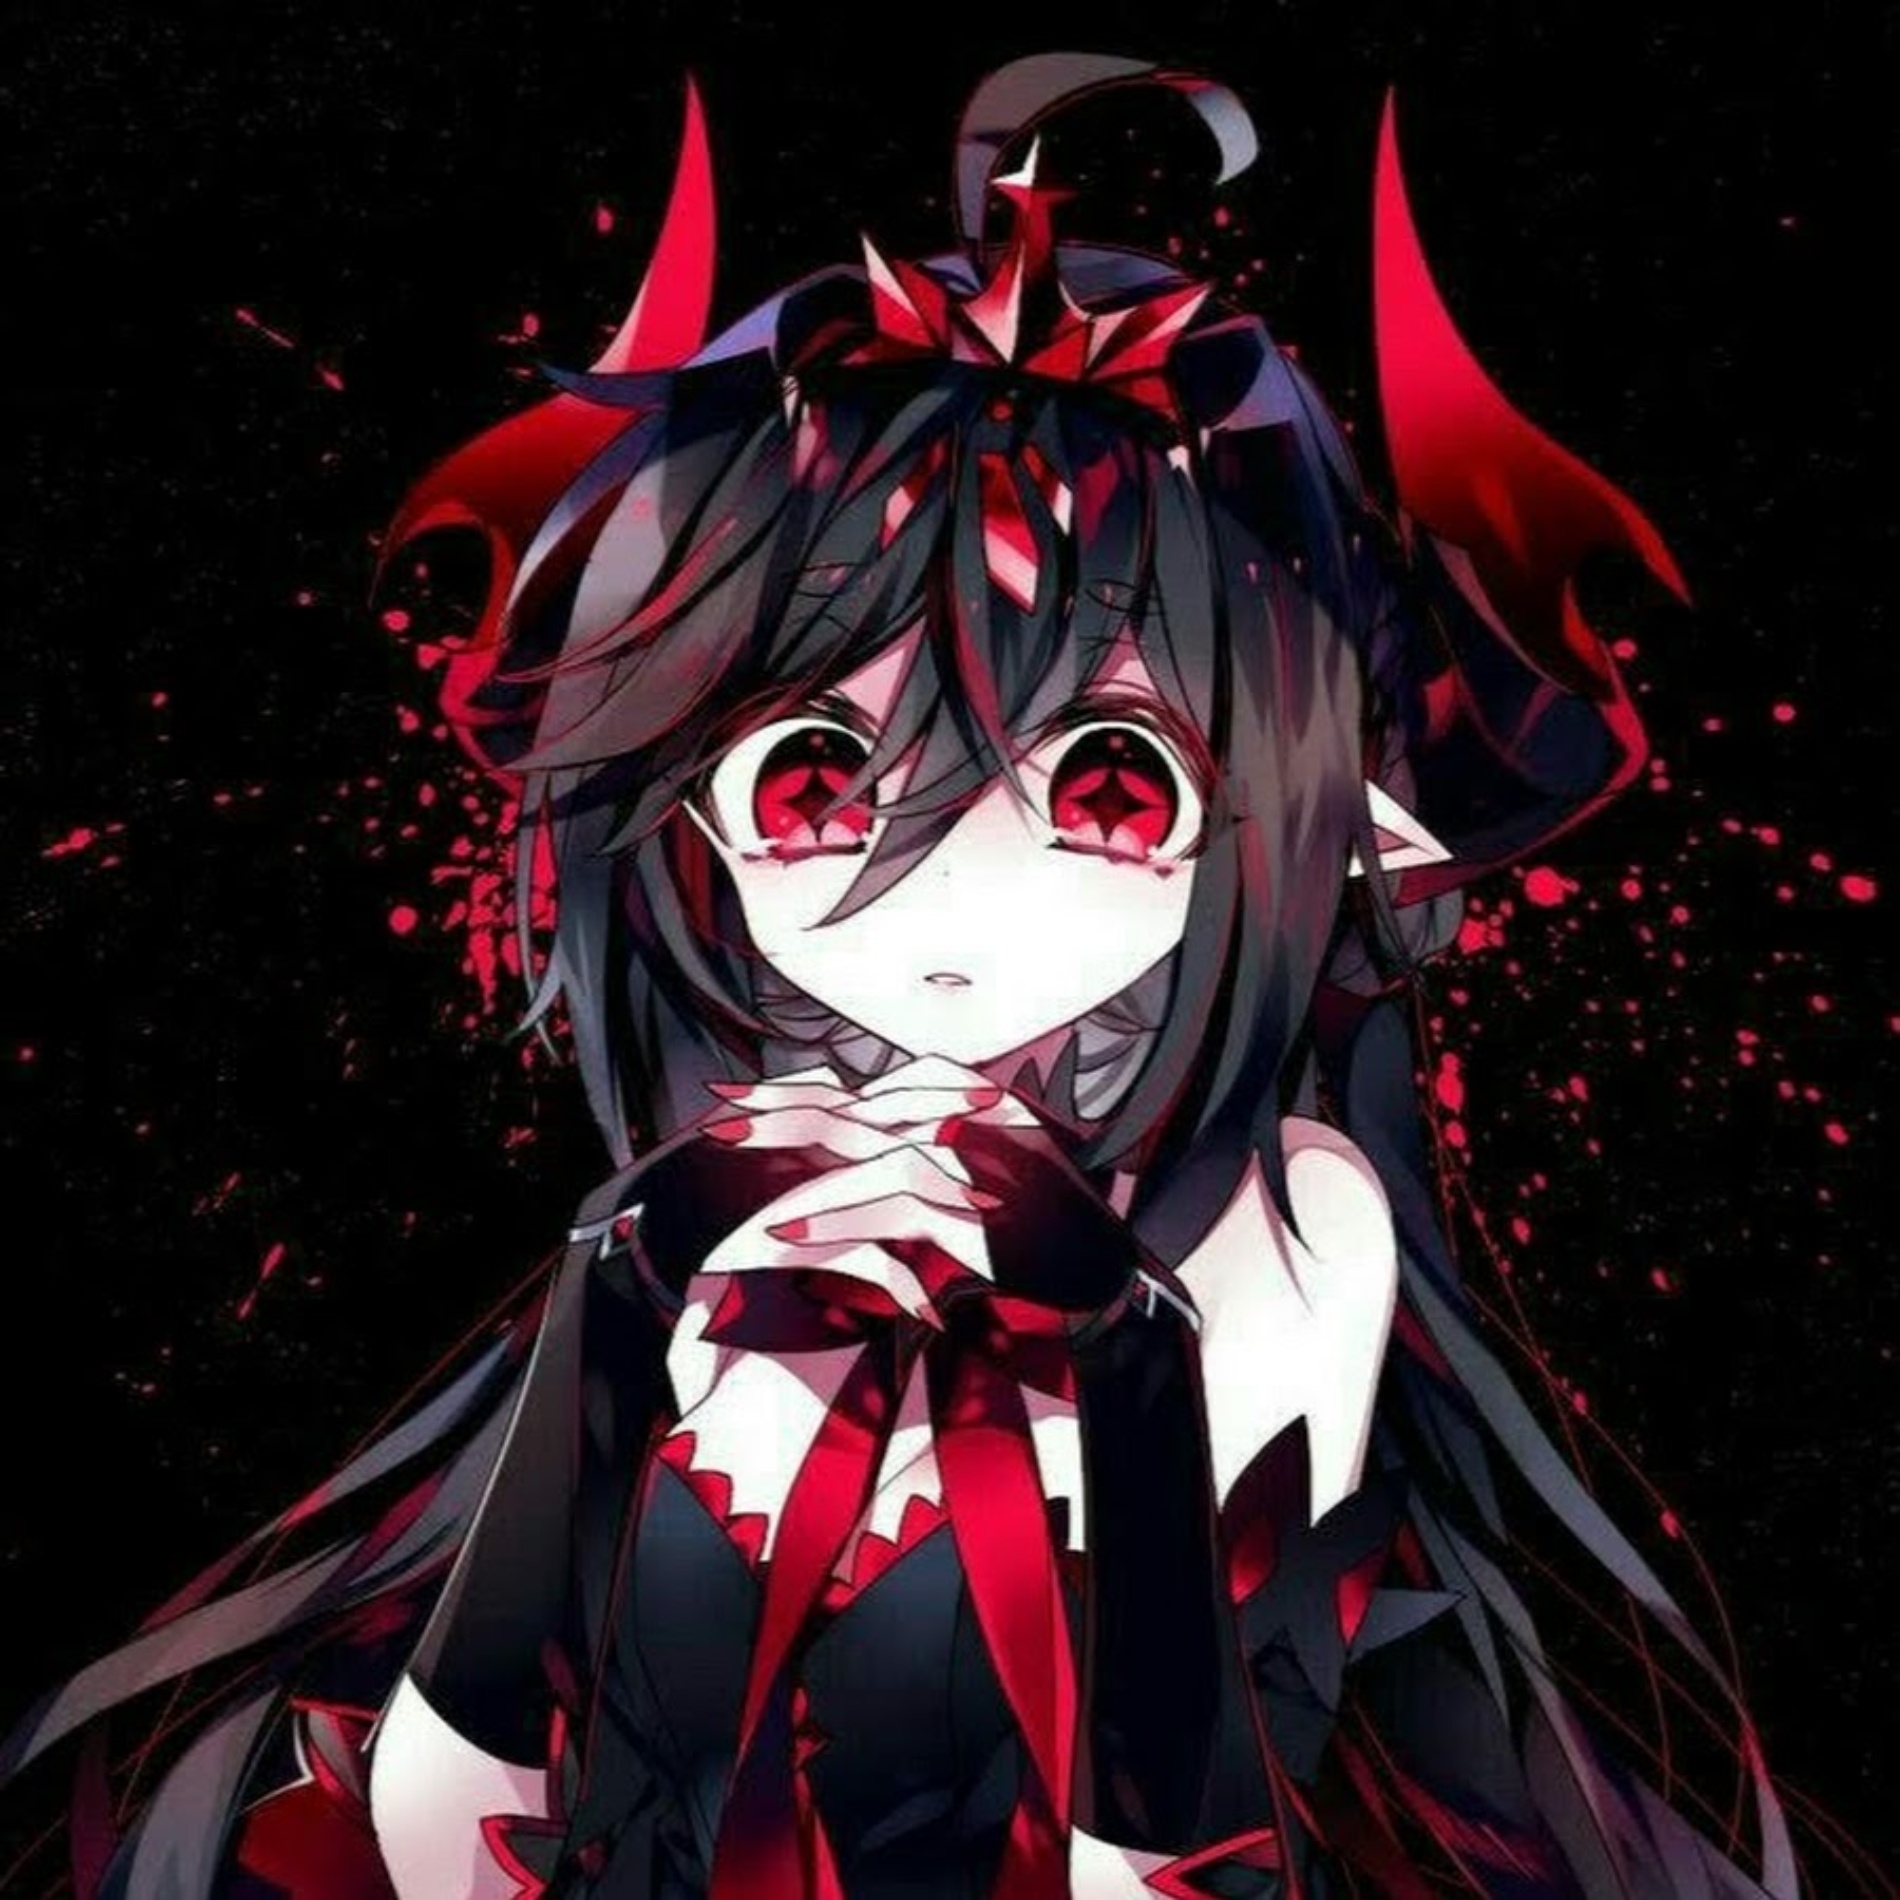 Devil Anime Girl Pfp for instagram